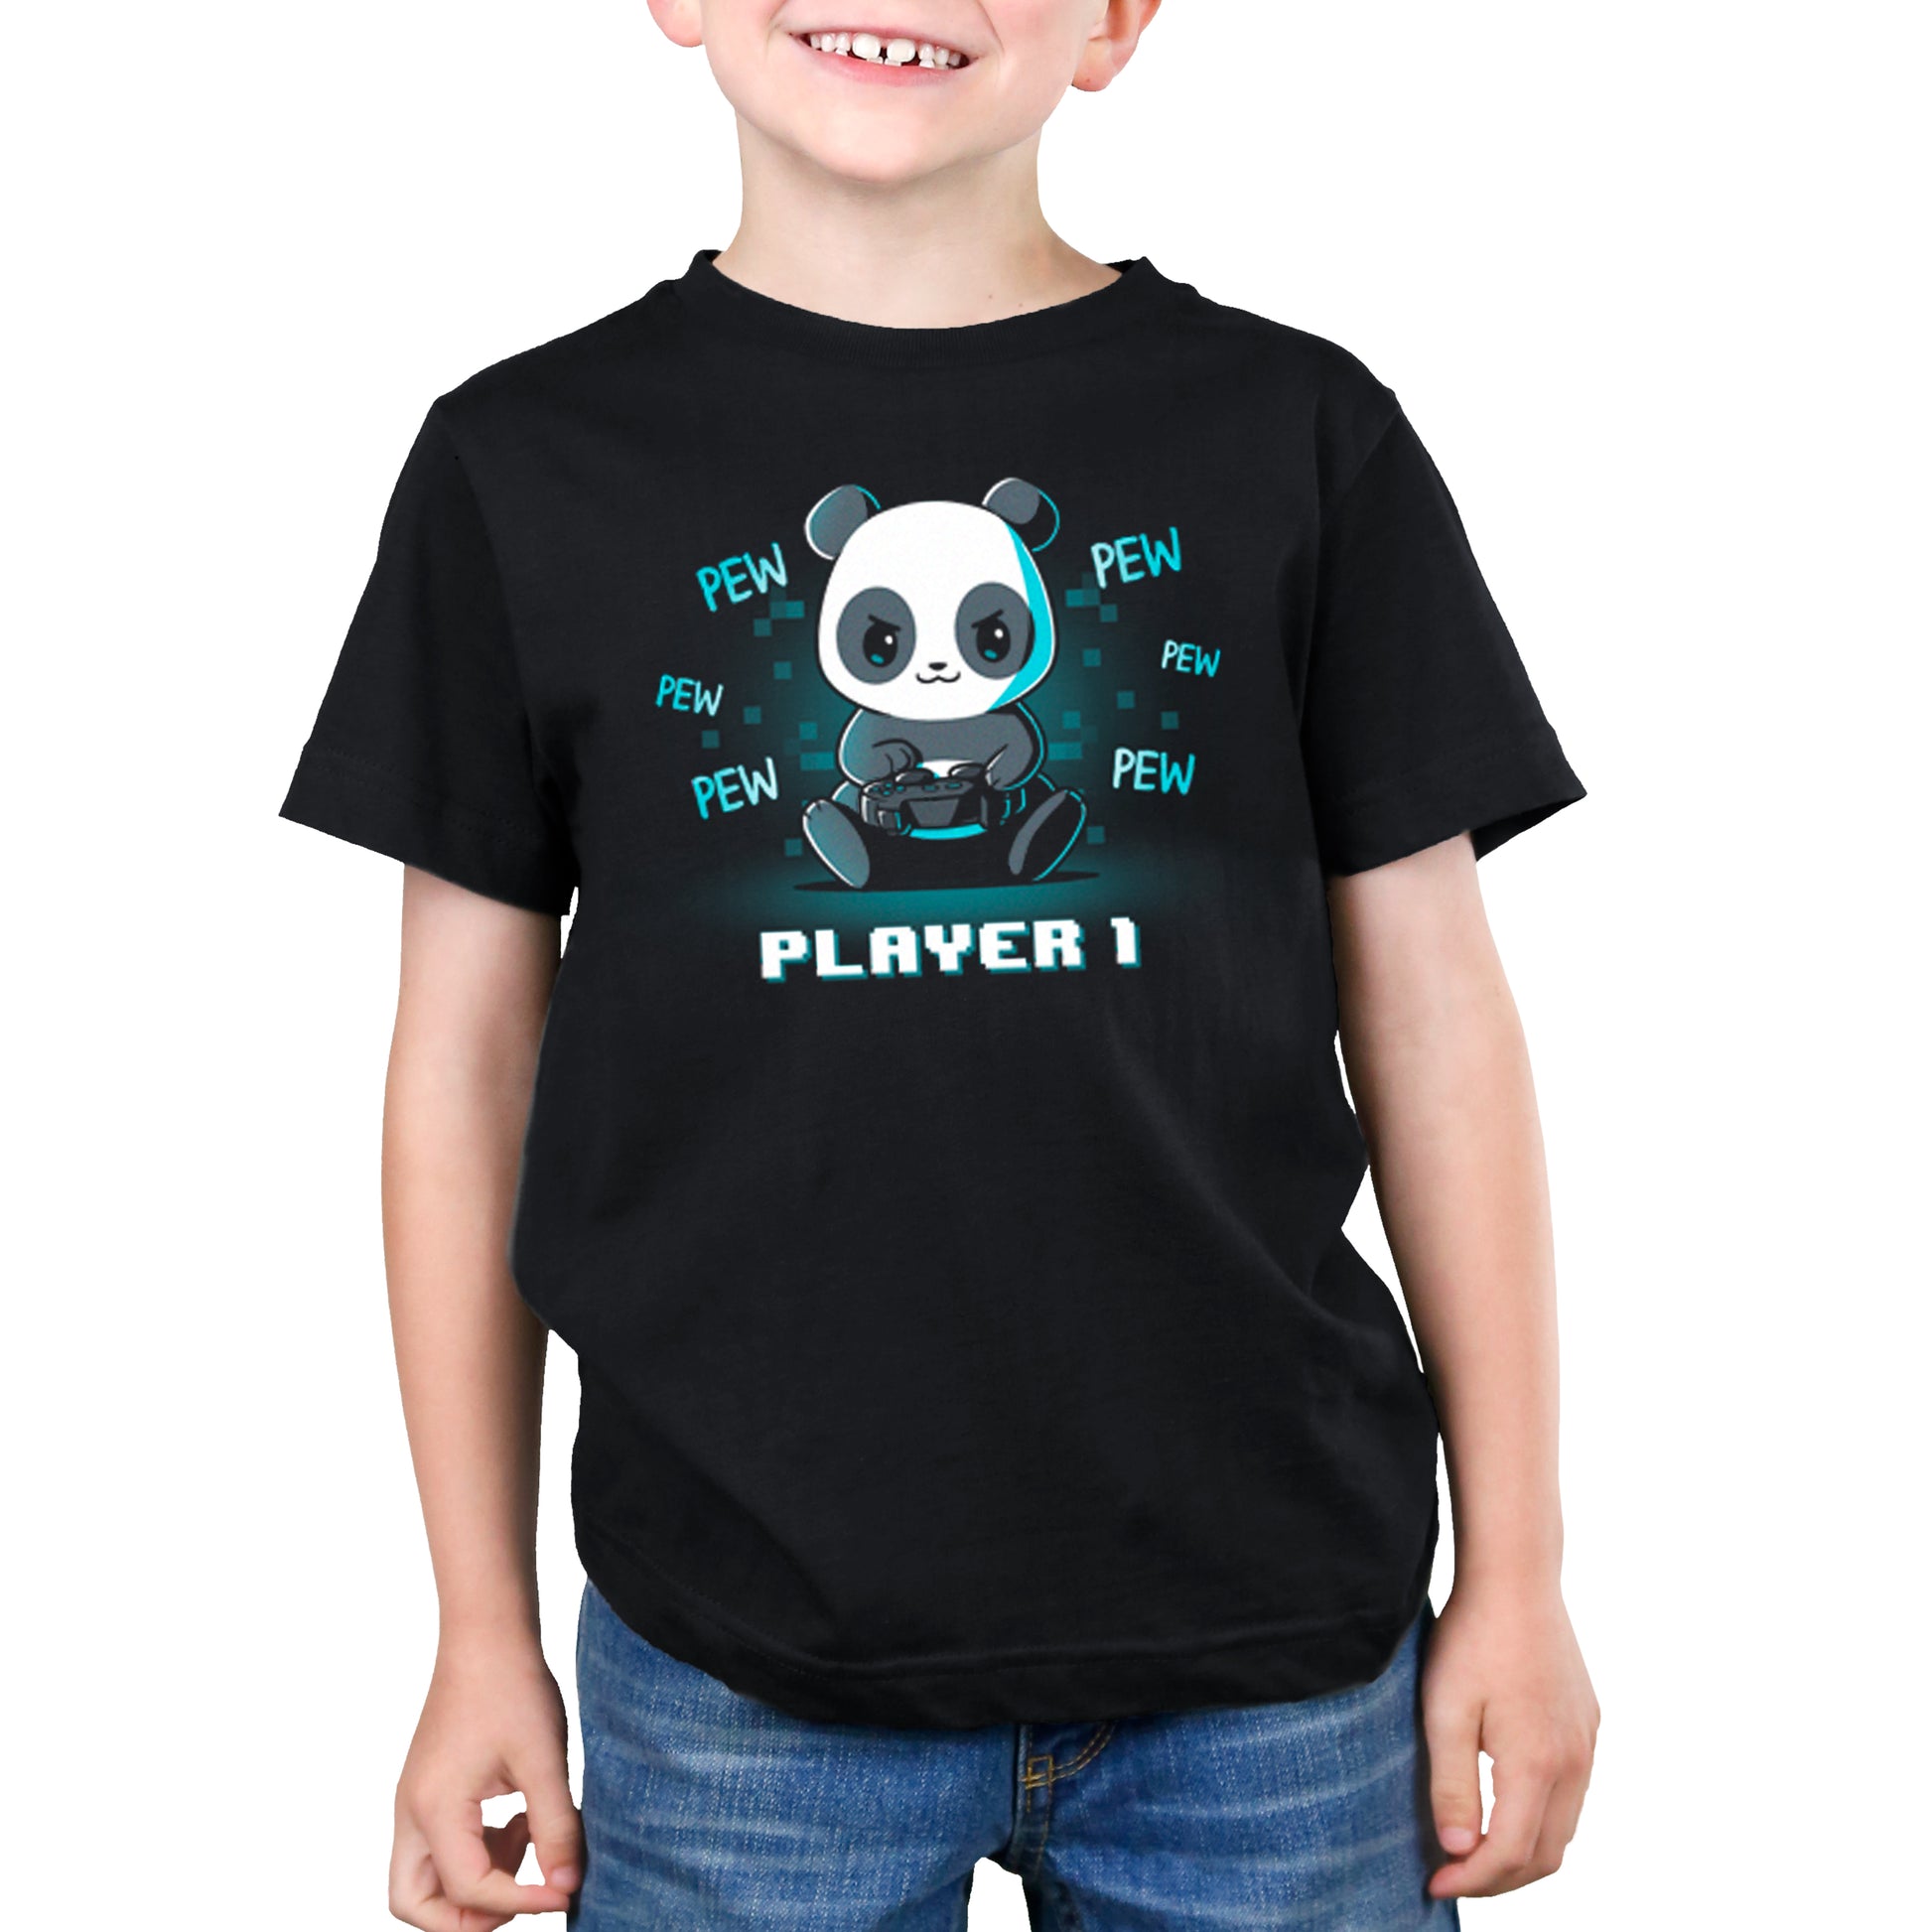 A young boy wearing a TeeTurtle Player 1 Panda t-shirt.